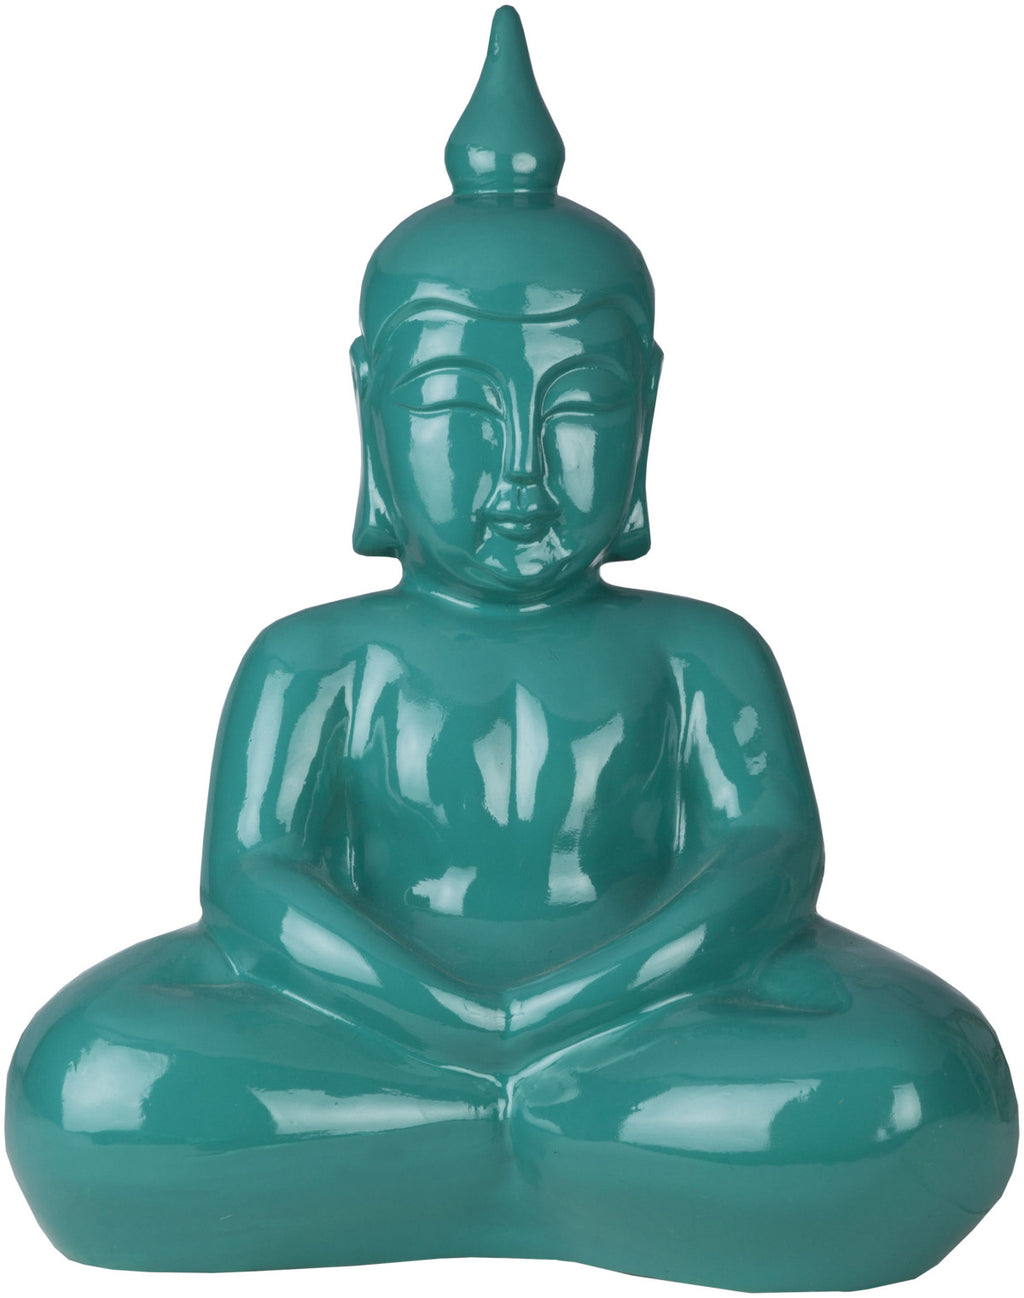 Surya Buddha BDH-102 Sculpture Sculpture 7.5 X 17 X 20.75 inches